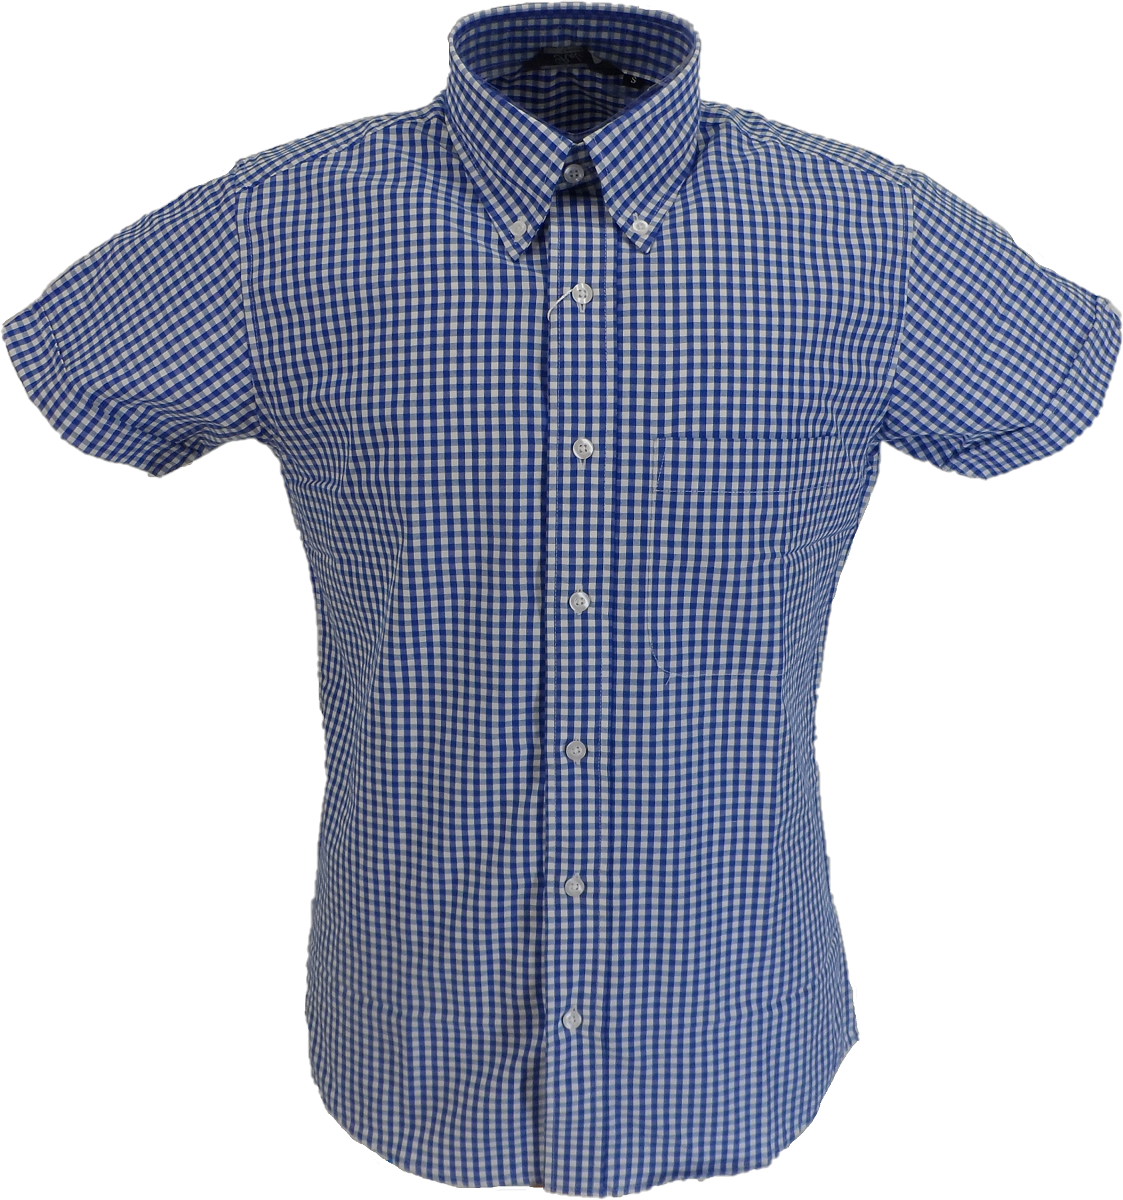 Camisas de manga corta con botones de algodón a cuadros azules Relco